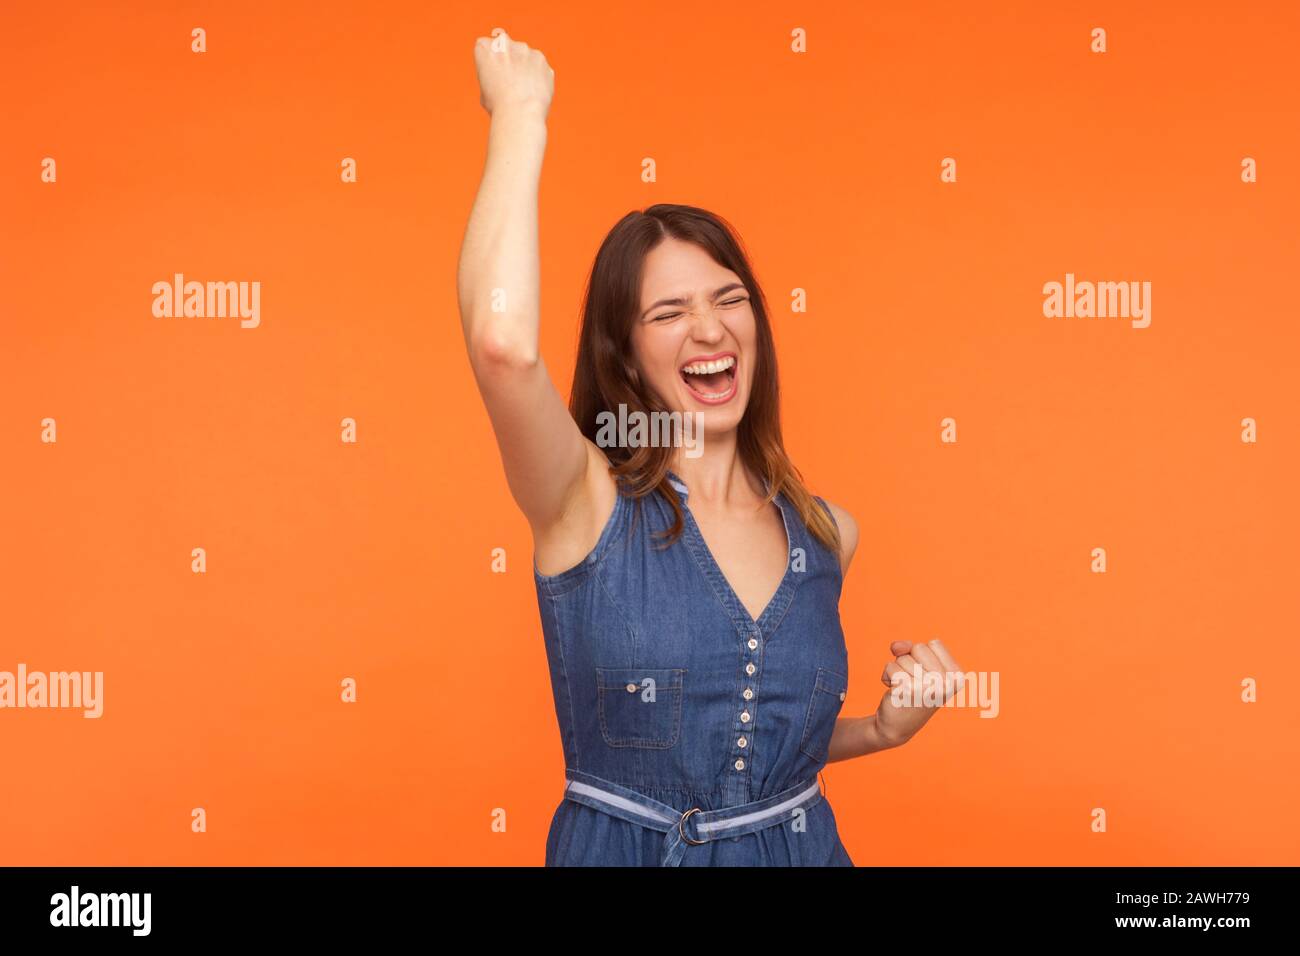 Hooray, victoire! Joyeuse femme brunette enthousiaste en denim dansant en hurlant de l'excitation, admirant le succès, se sentant champion Banque D'Images